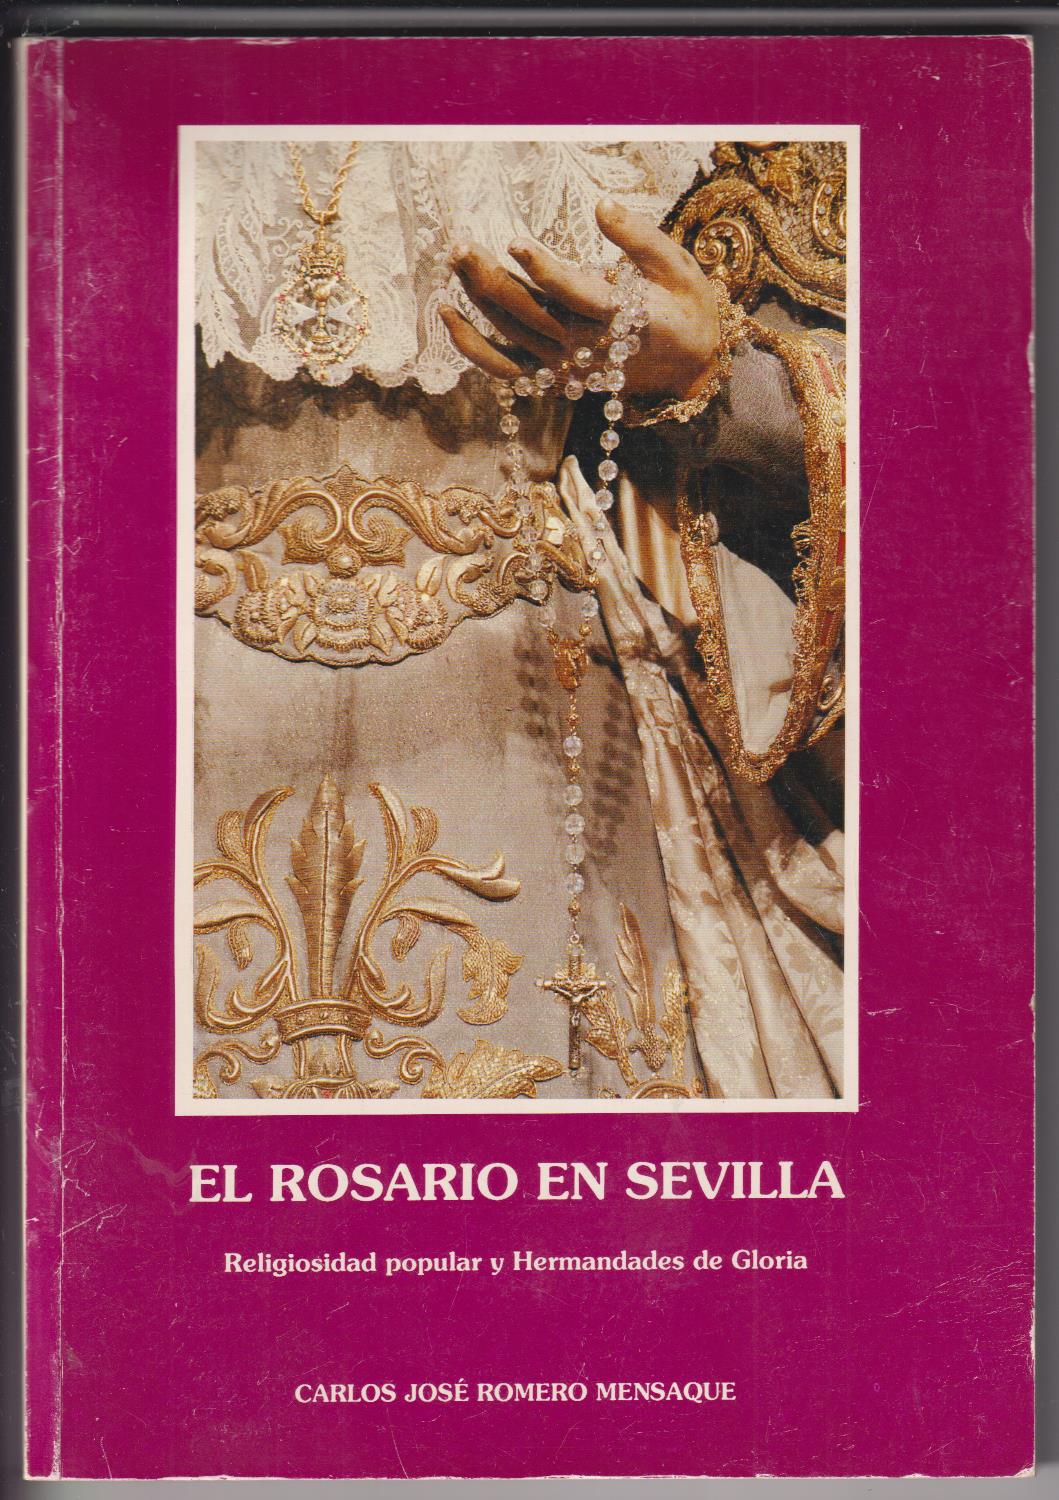 El Rosario en Sevilla. Carlos José Romero Mensaque. 1ª Edición 1990